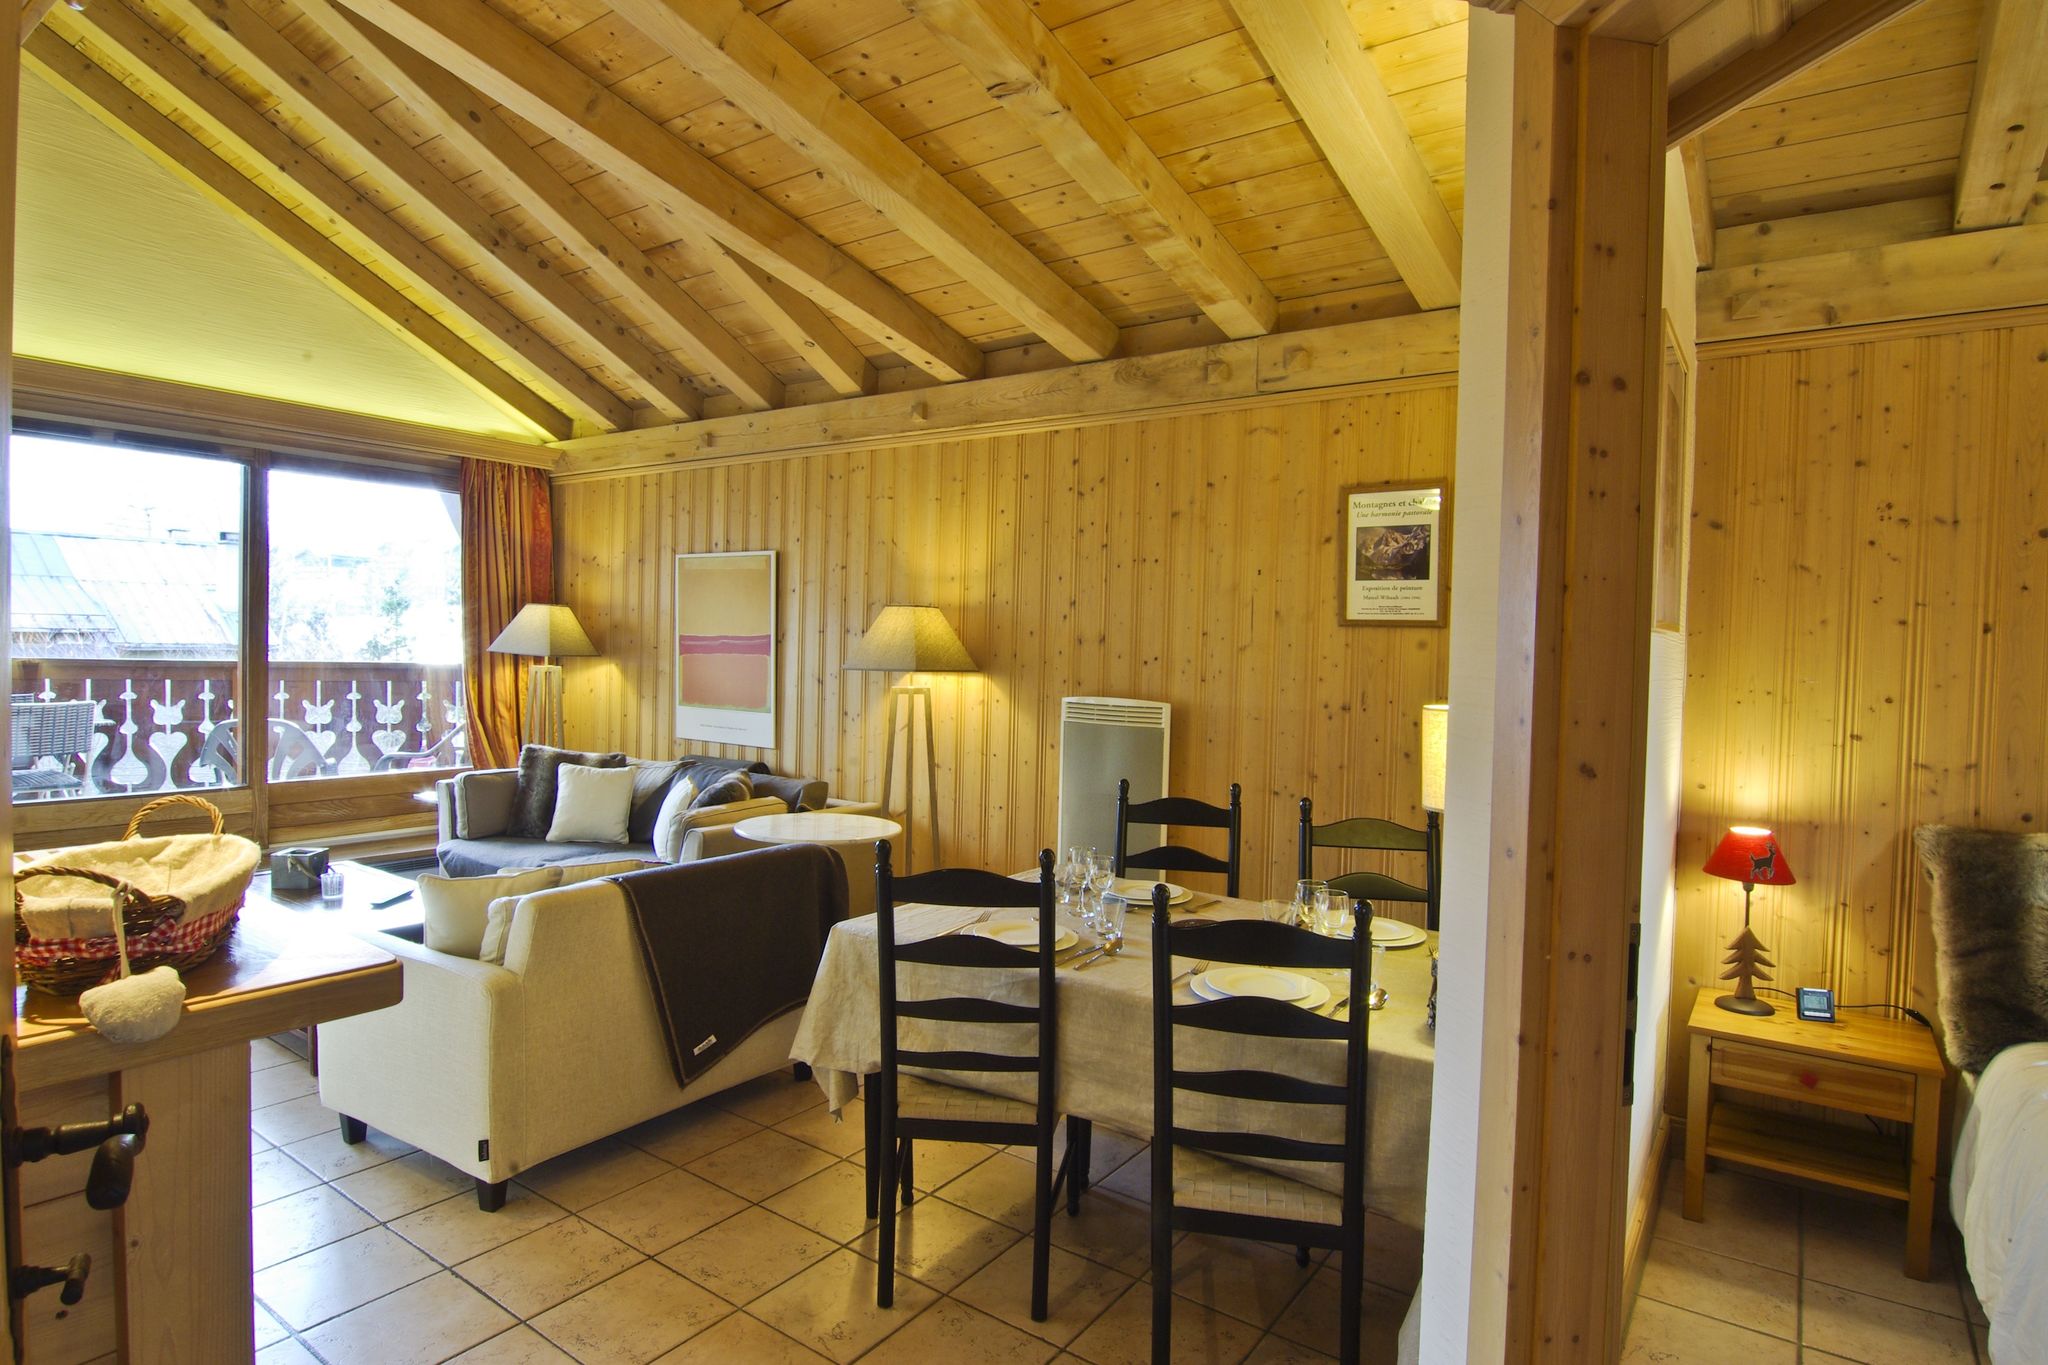 Appartement op slechts 200 m van het skigebied van Savoye/Brevent